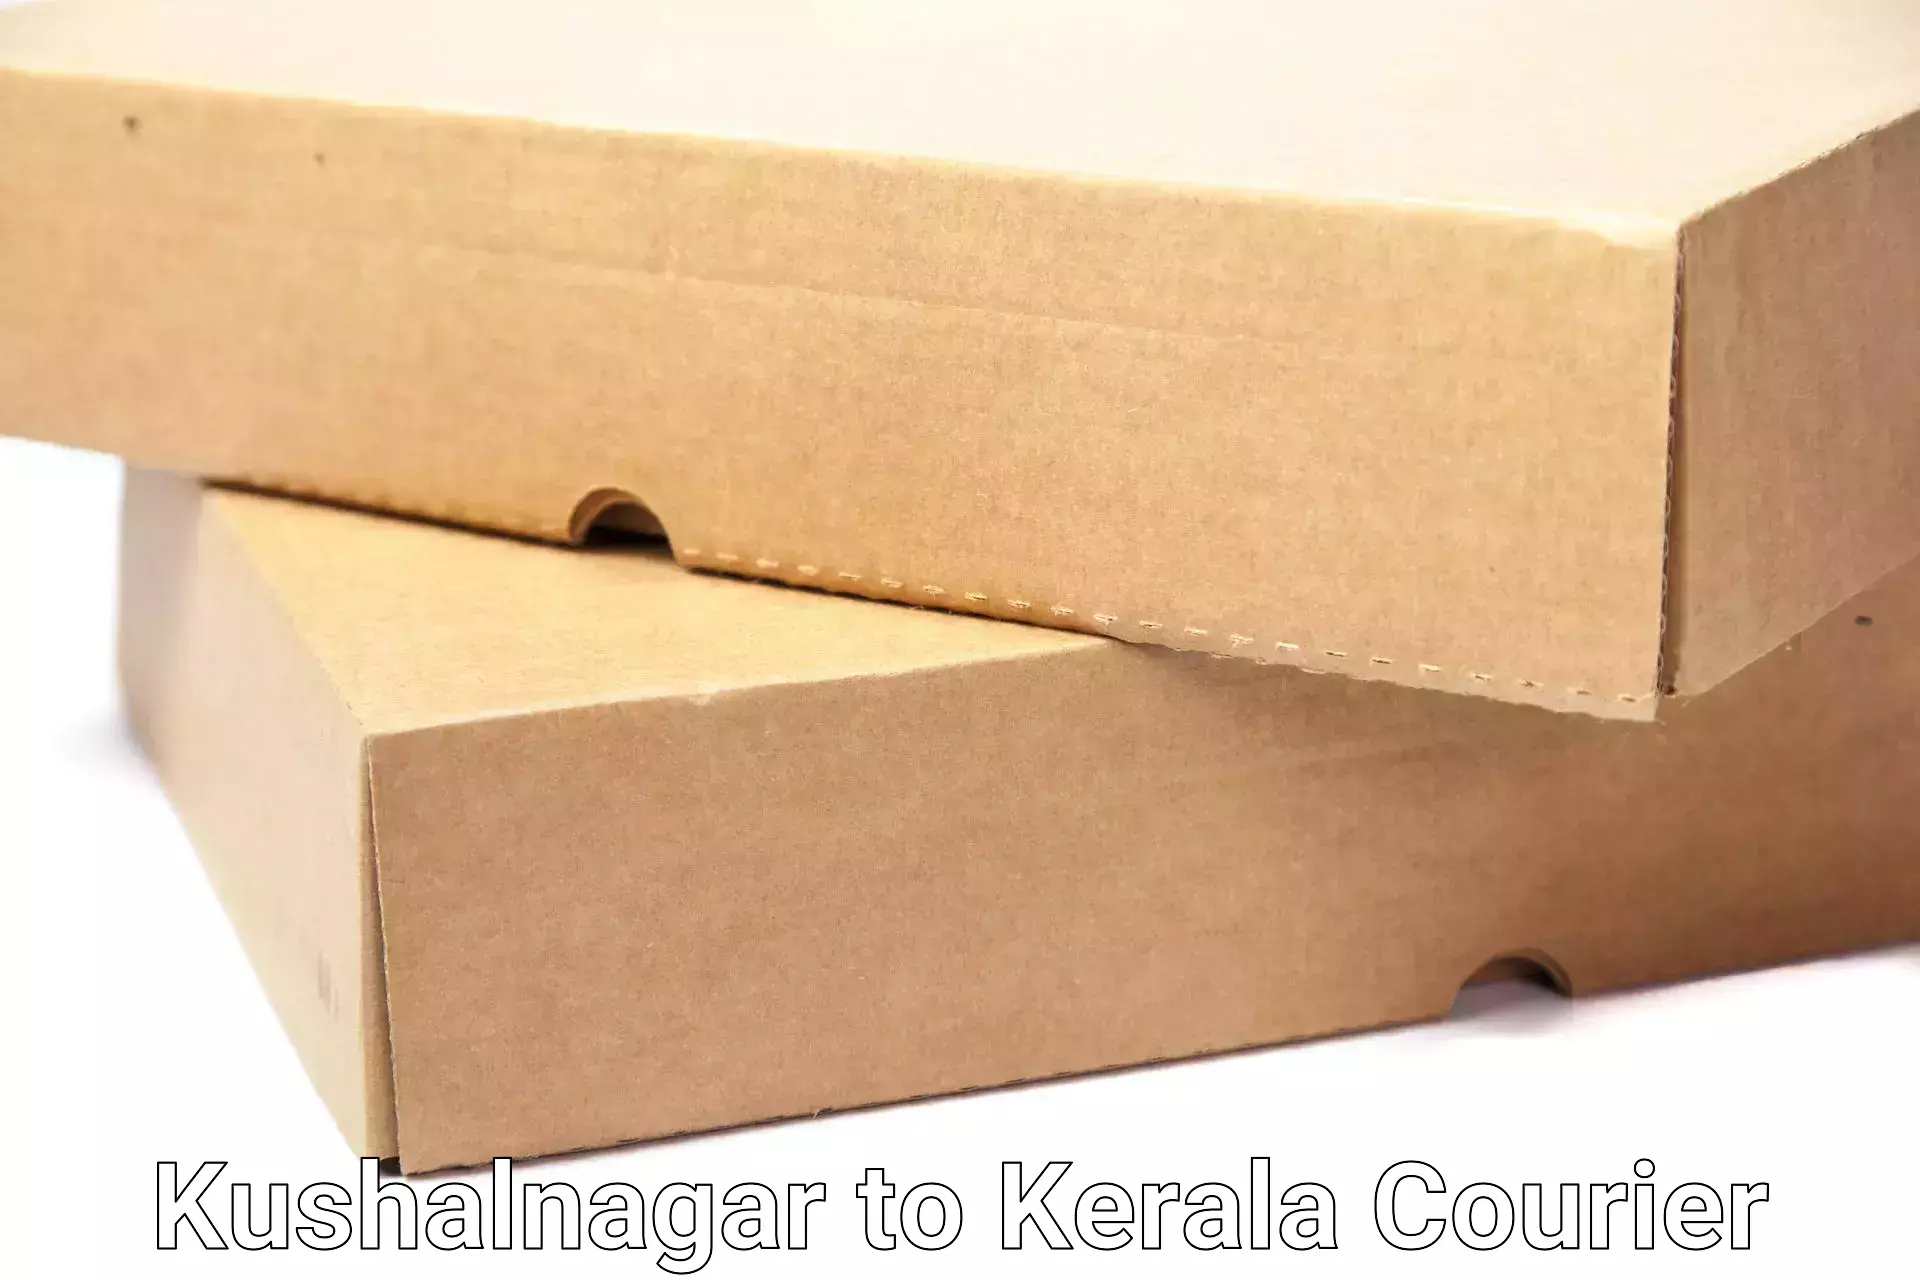 Safe household movers Kushalnagar to Kottayam